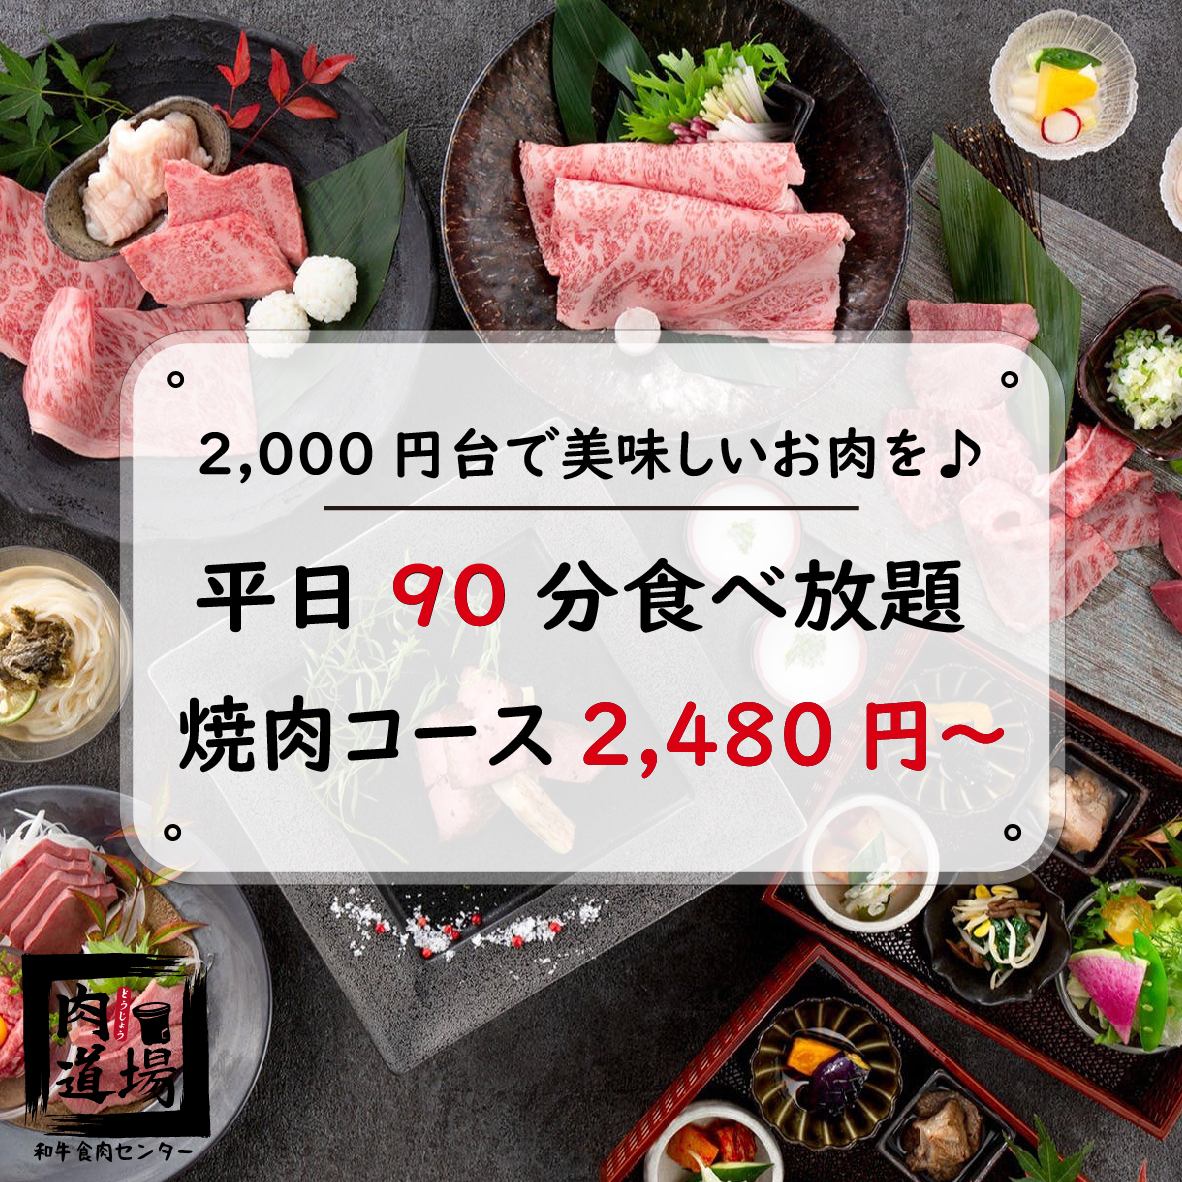 從大宮站步行3分鐘★無限量供應的烤肉套餐價格為2480日元起♪